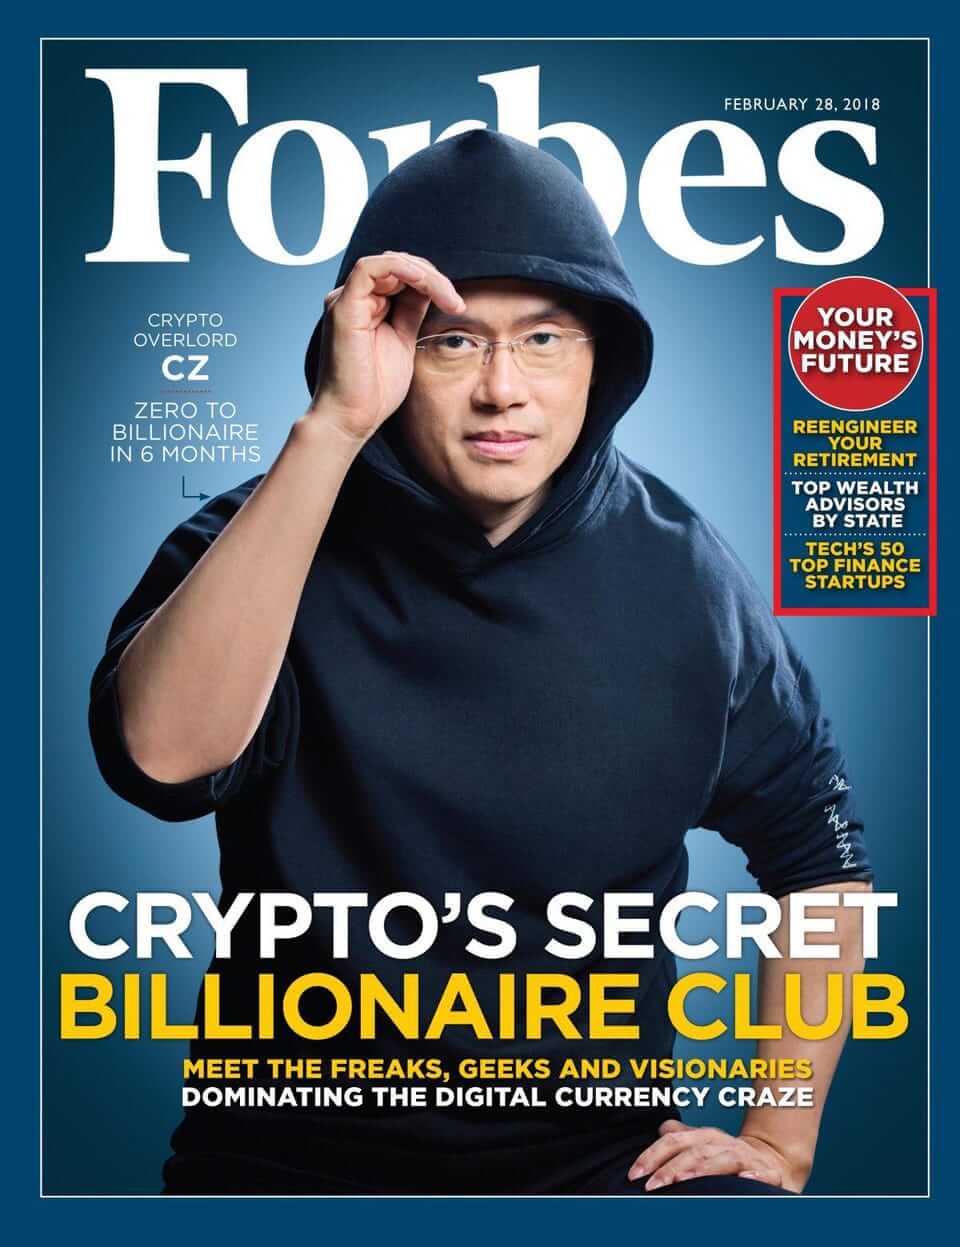 Forbes журнал издание